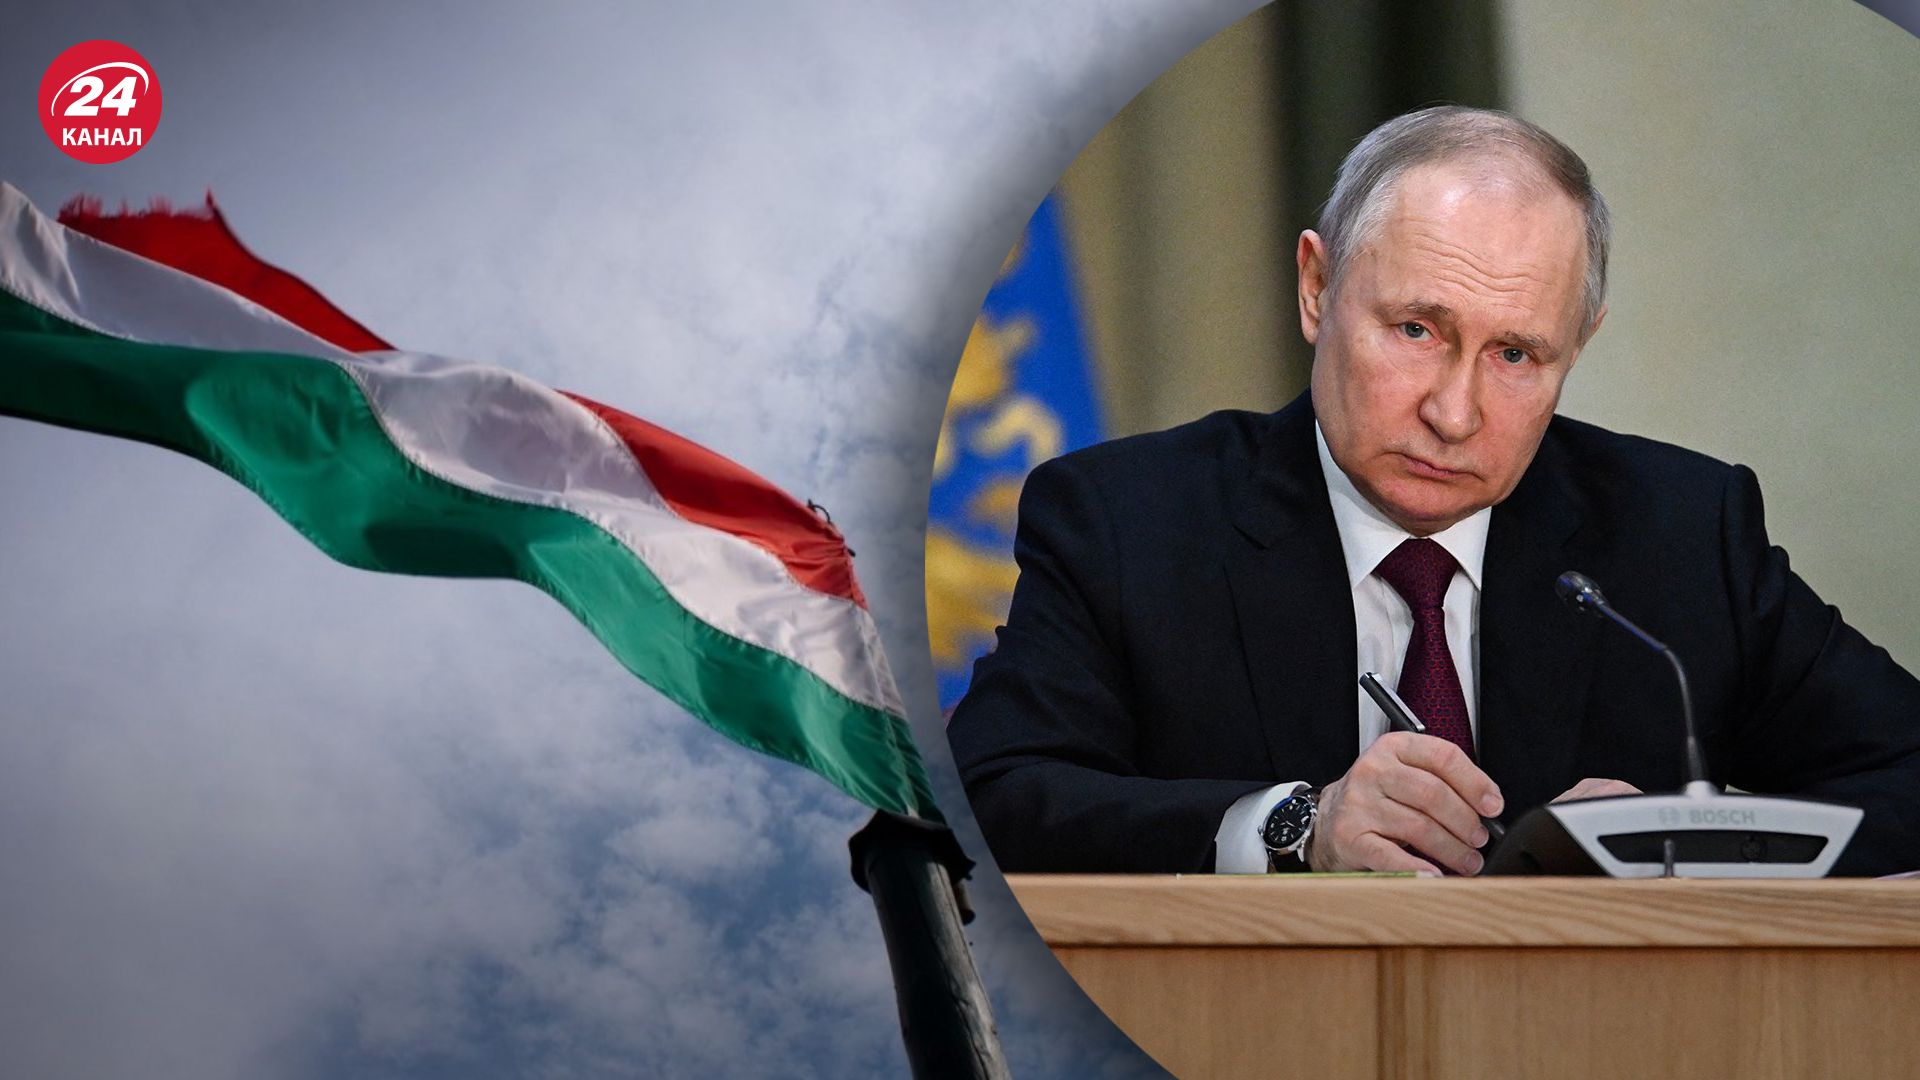 Венгрия заблокировала совместное заявление ЕС по поводу ордера на арест Путина